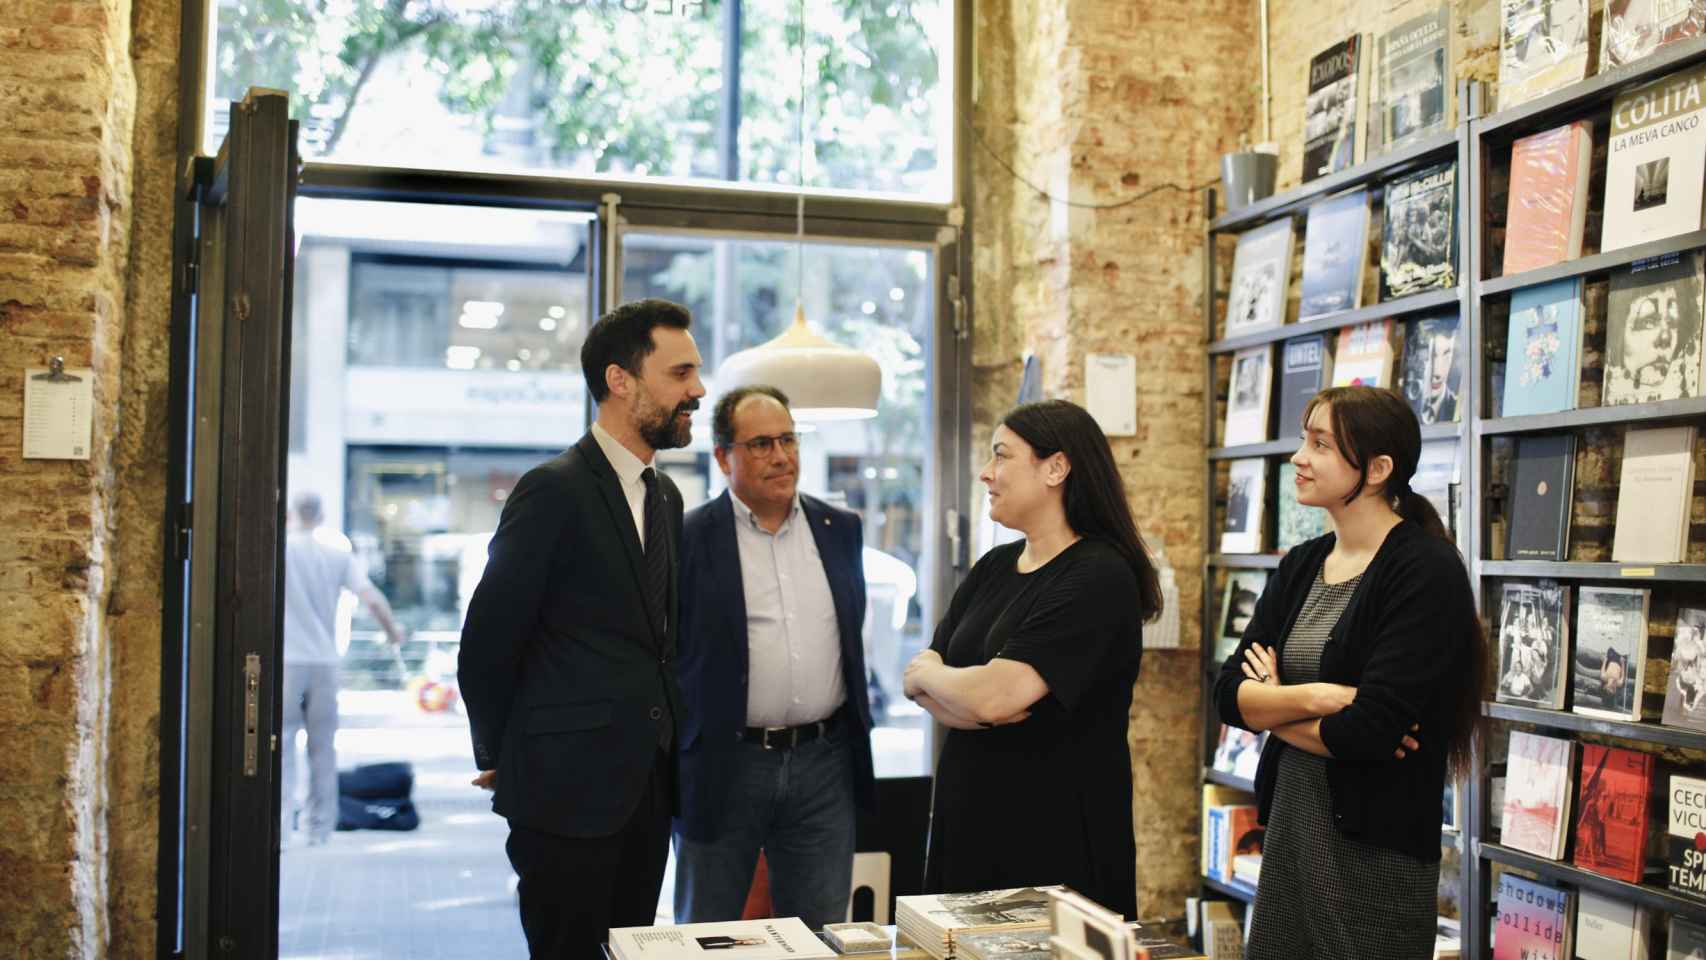 El 'conseller' Roger Torrent i el secretari de Treball, Enric Vinaixa, en la visita a la librería Restory de Barcelona